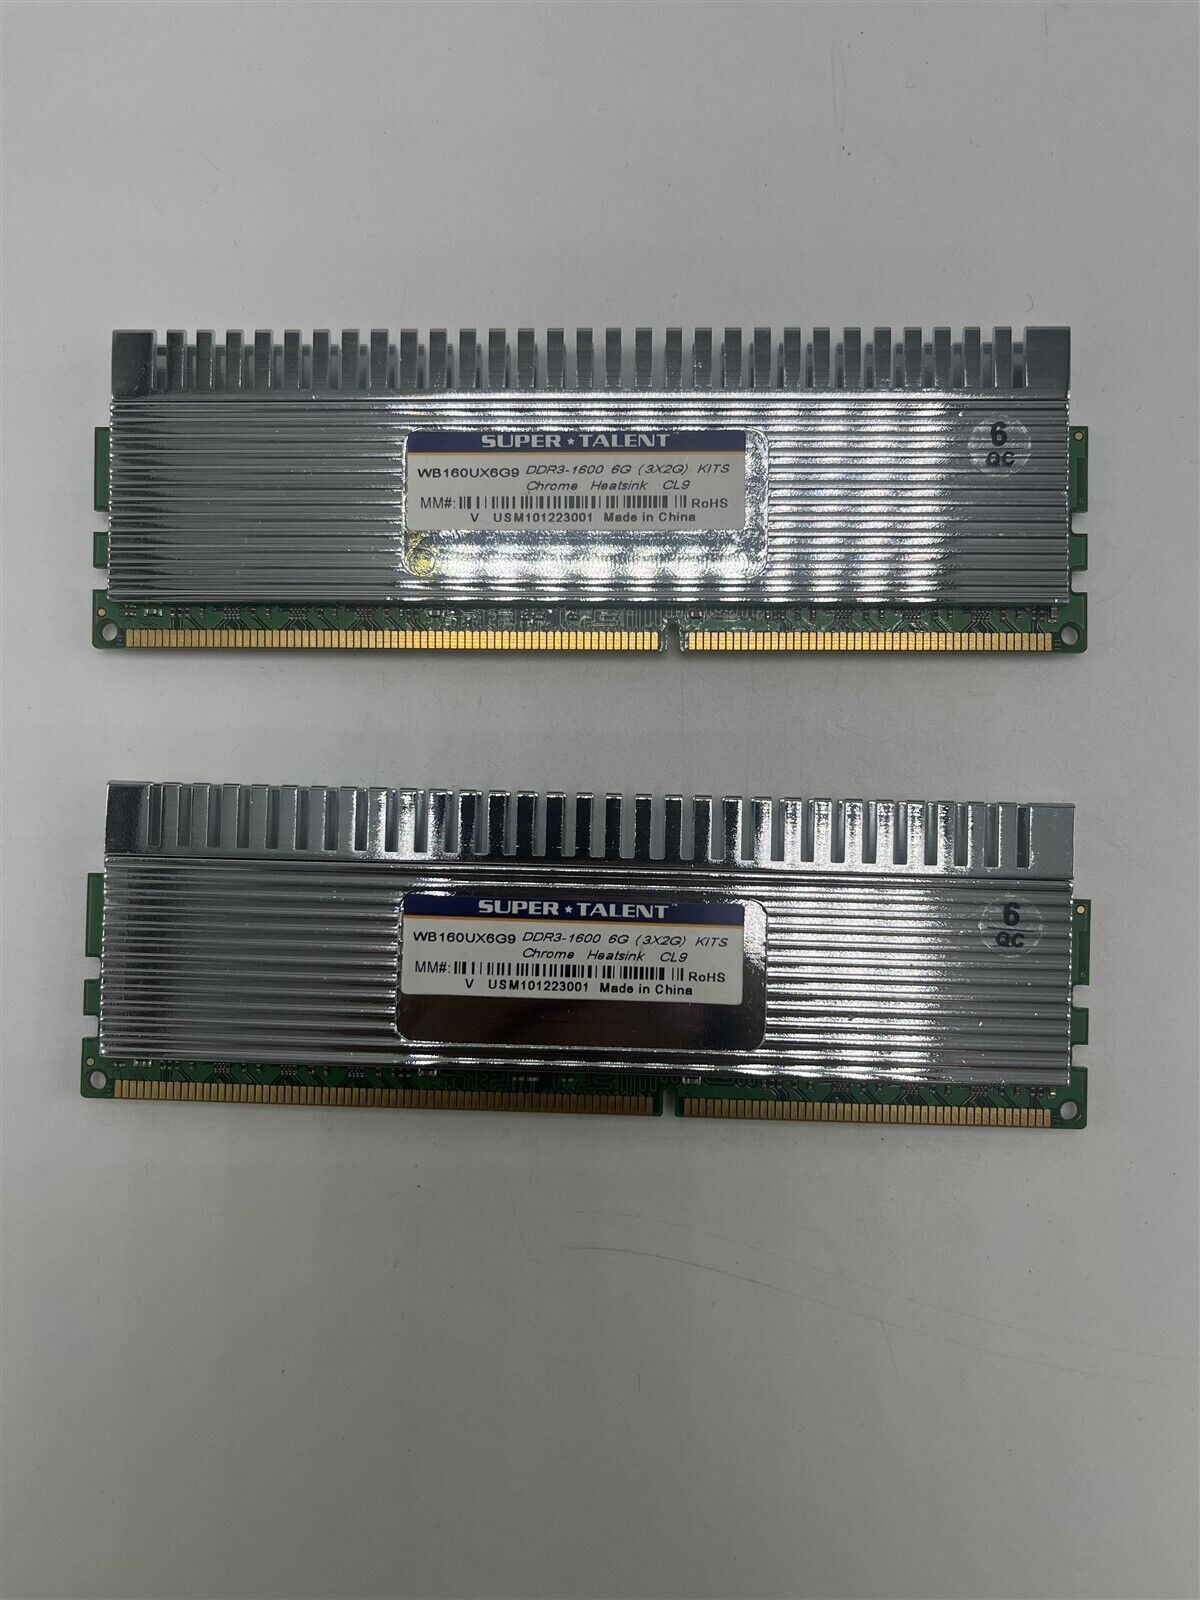 Super Talent 6GB DDR3-1600 CL9 With Heatsink RAM